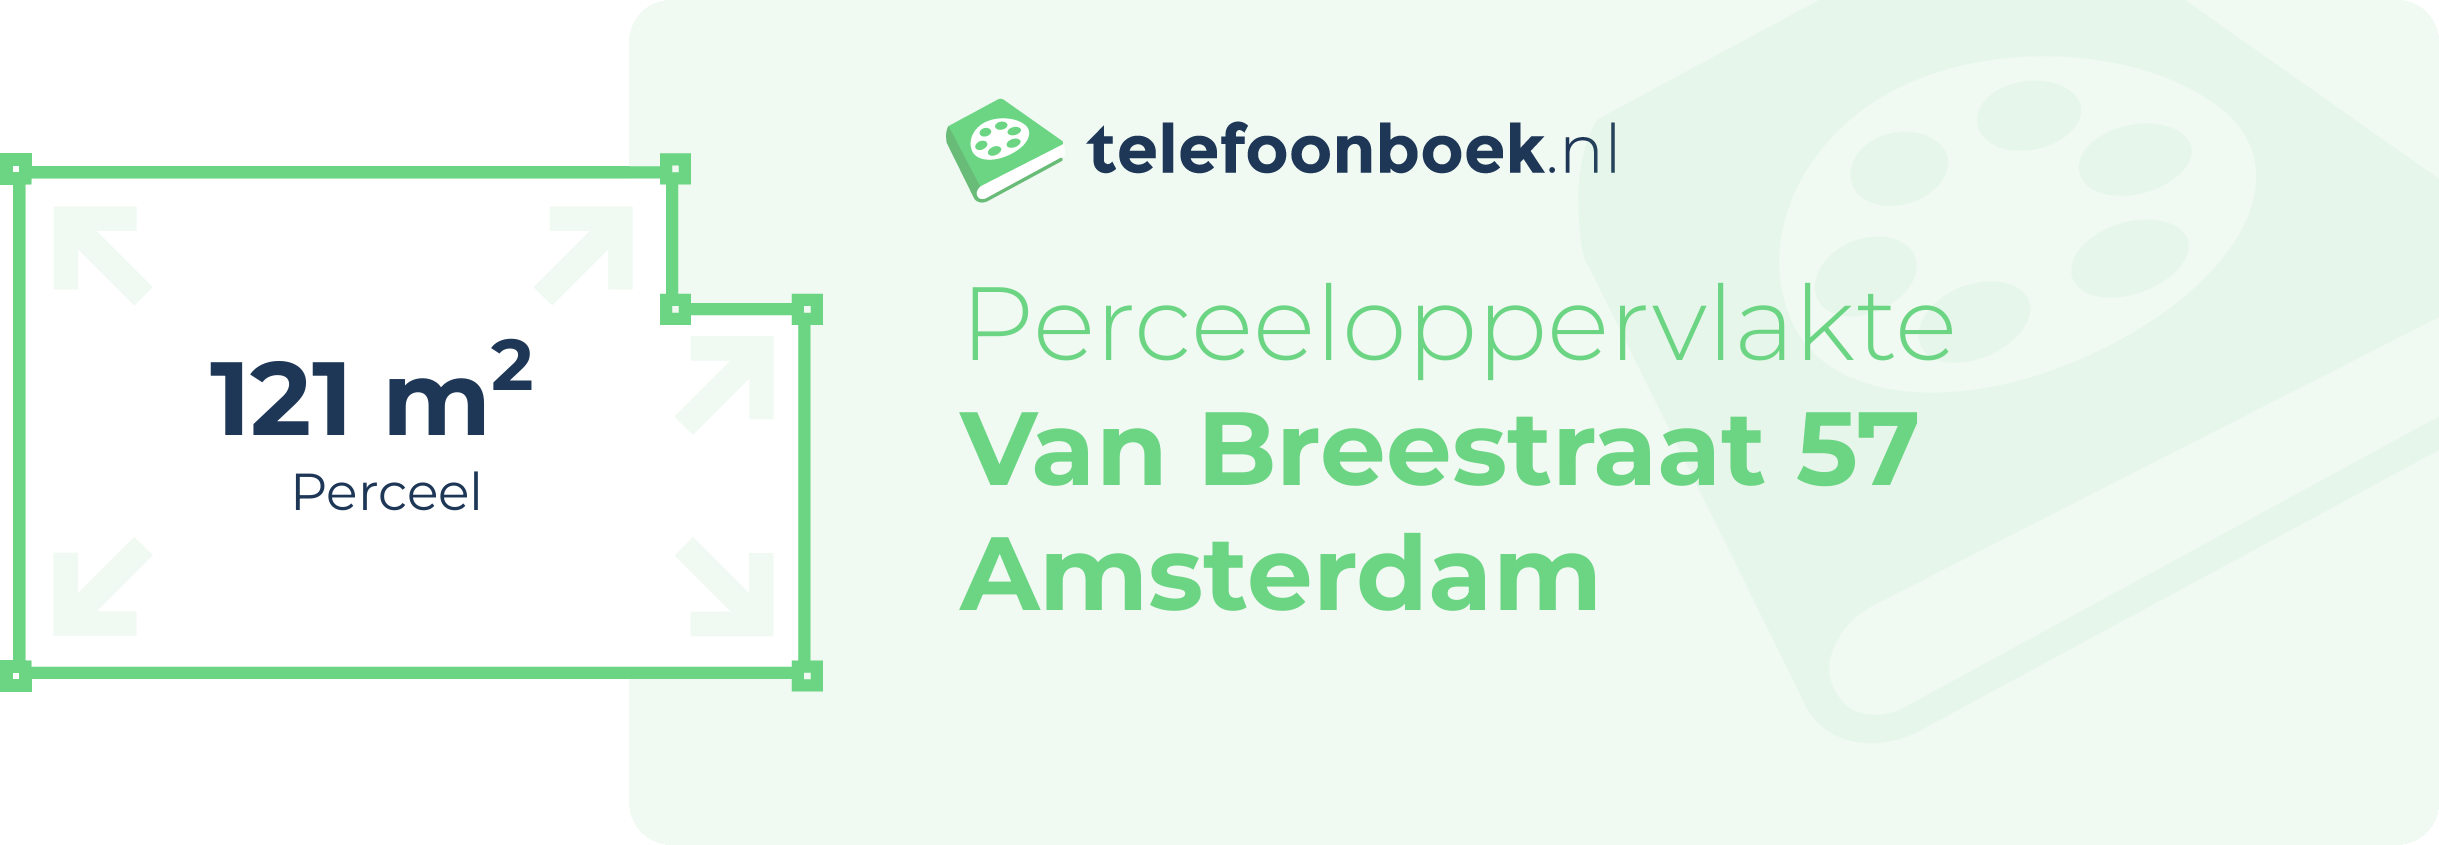 Perceeloppervlakte Van Breestraat 57 Amsterdam